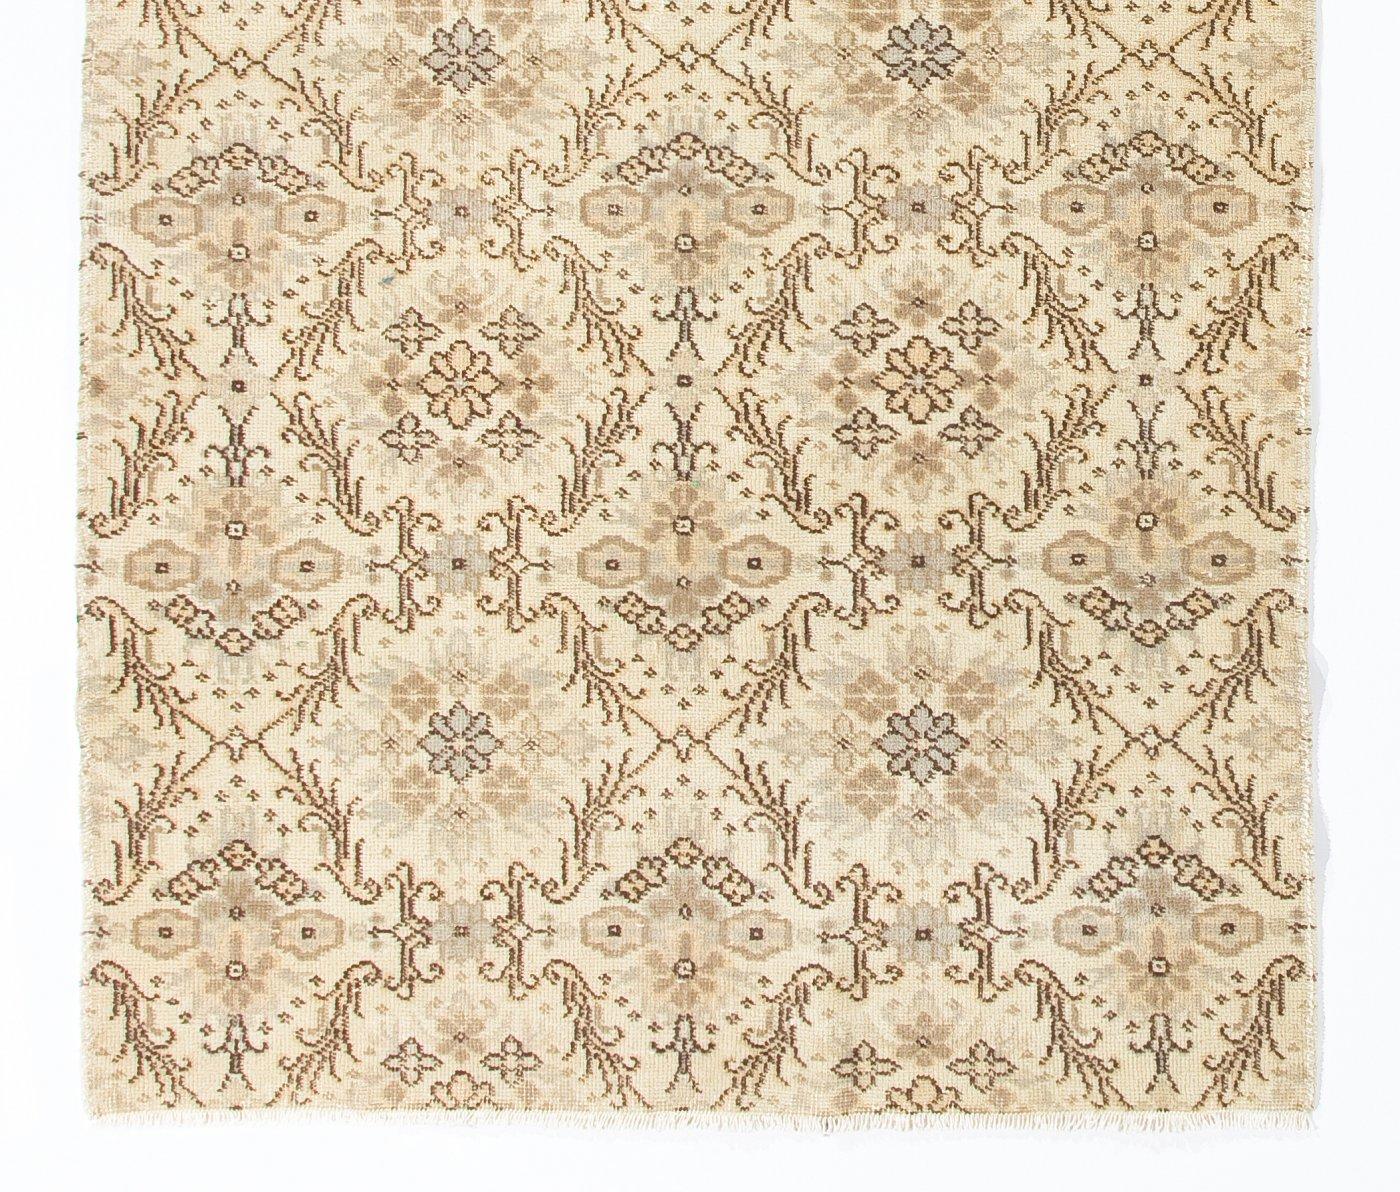 Oushak 4.2x7.4 Ft Vintage Floral Design Handmade Anatolian Rug, Woolen Floor Covering For Sale